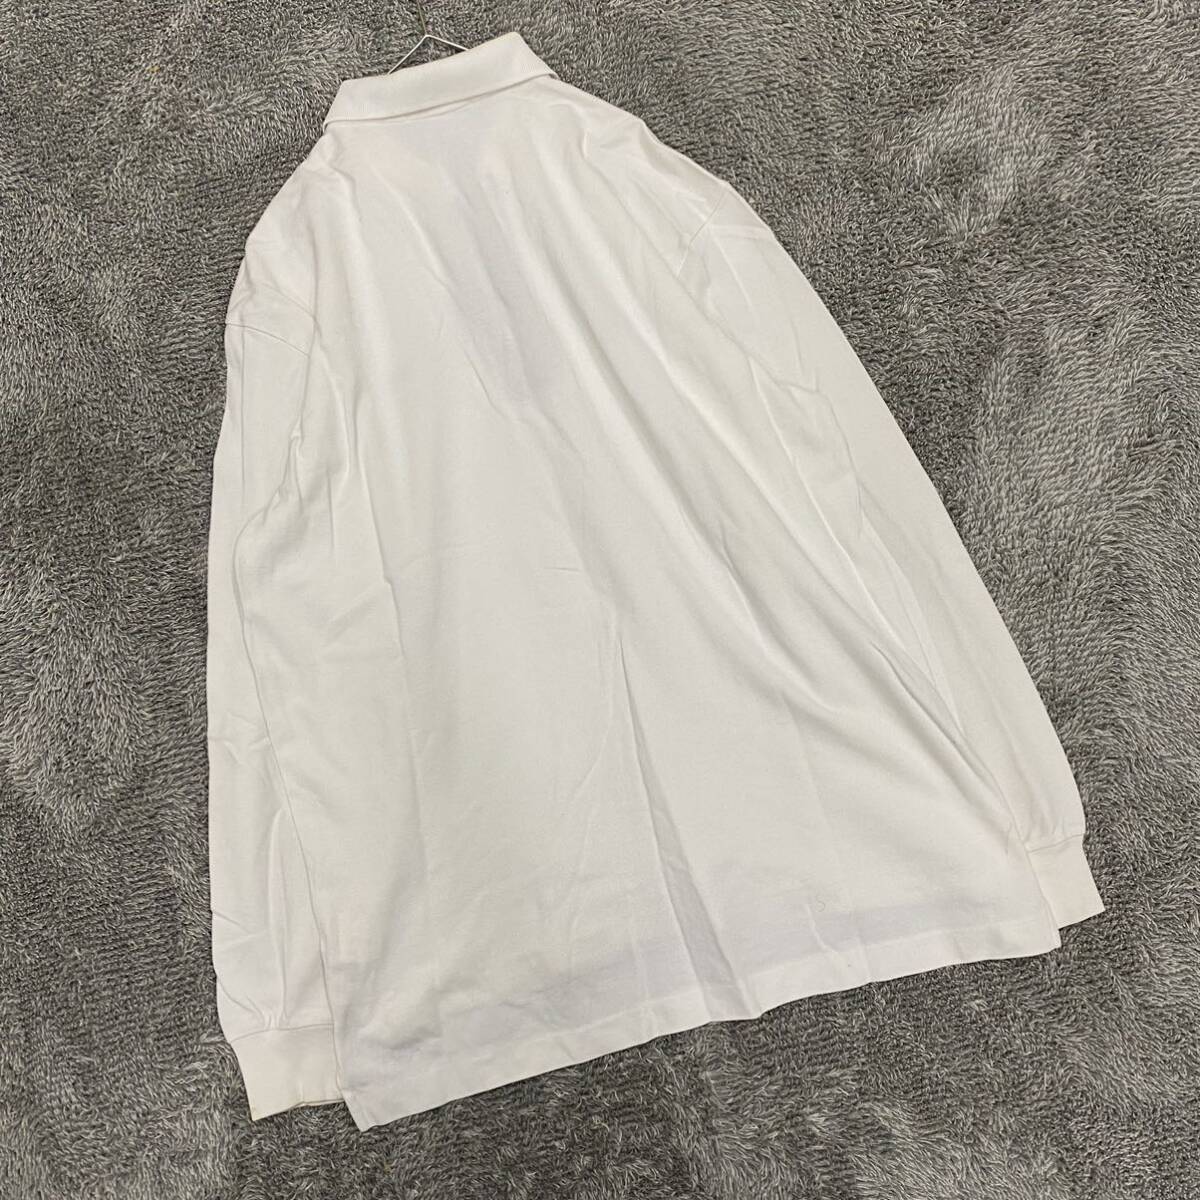 Christian Dior ディオール 長袖シャツ ワイシャツ ドレスシャツ ホワイト 白 メンズ トップス 最落なし （S18）の画像1